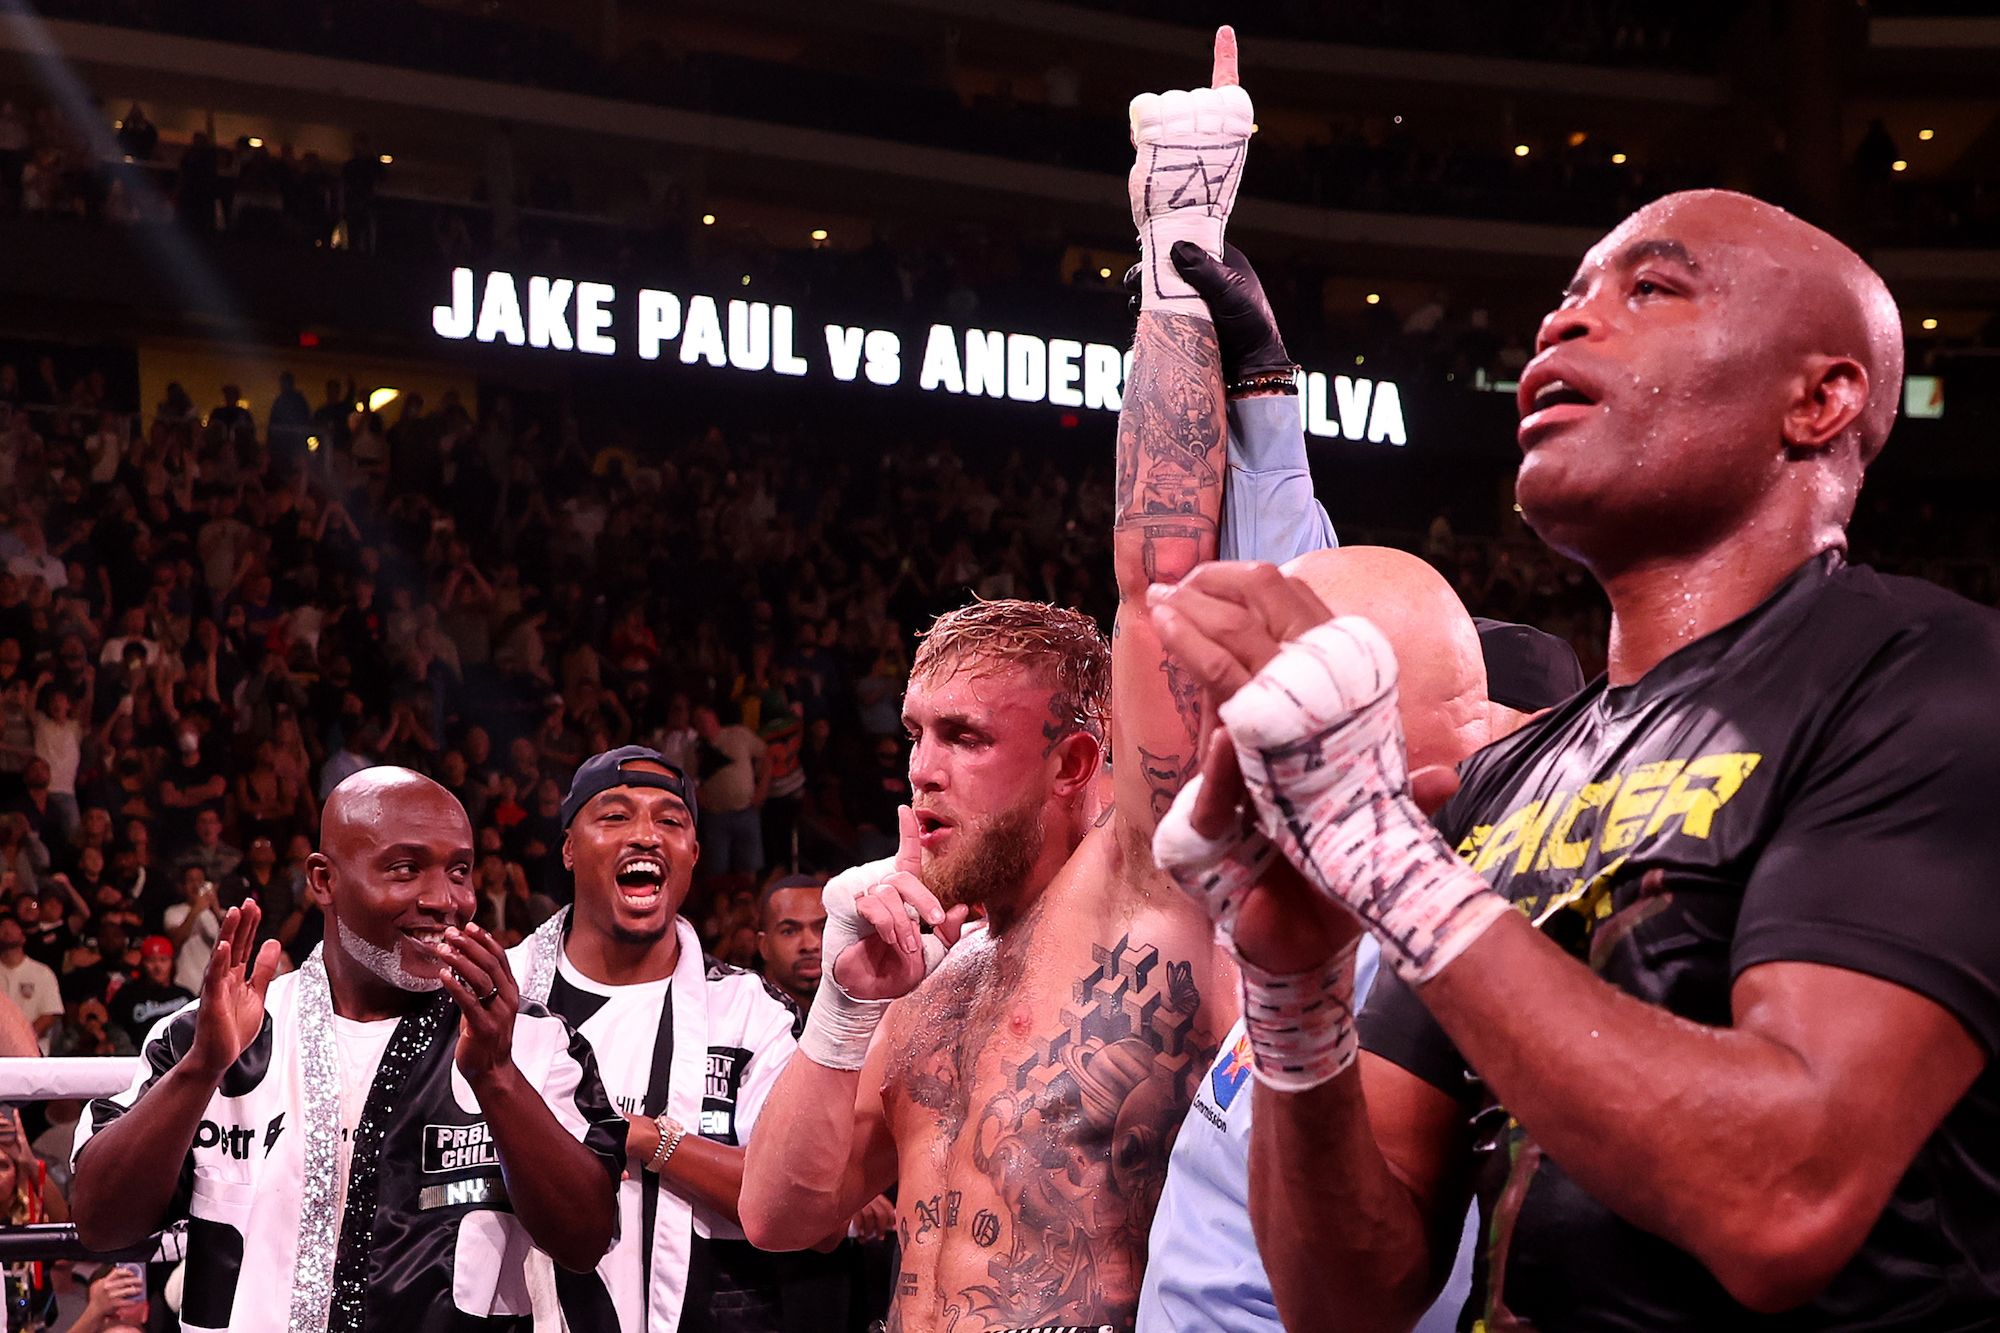 Jake Paul defeats UFC legend Anderson Silva by unanimous decision